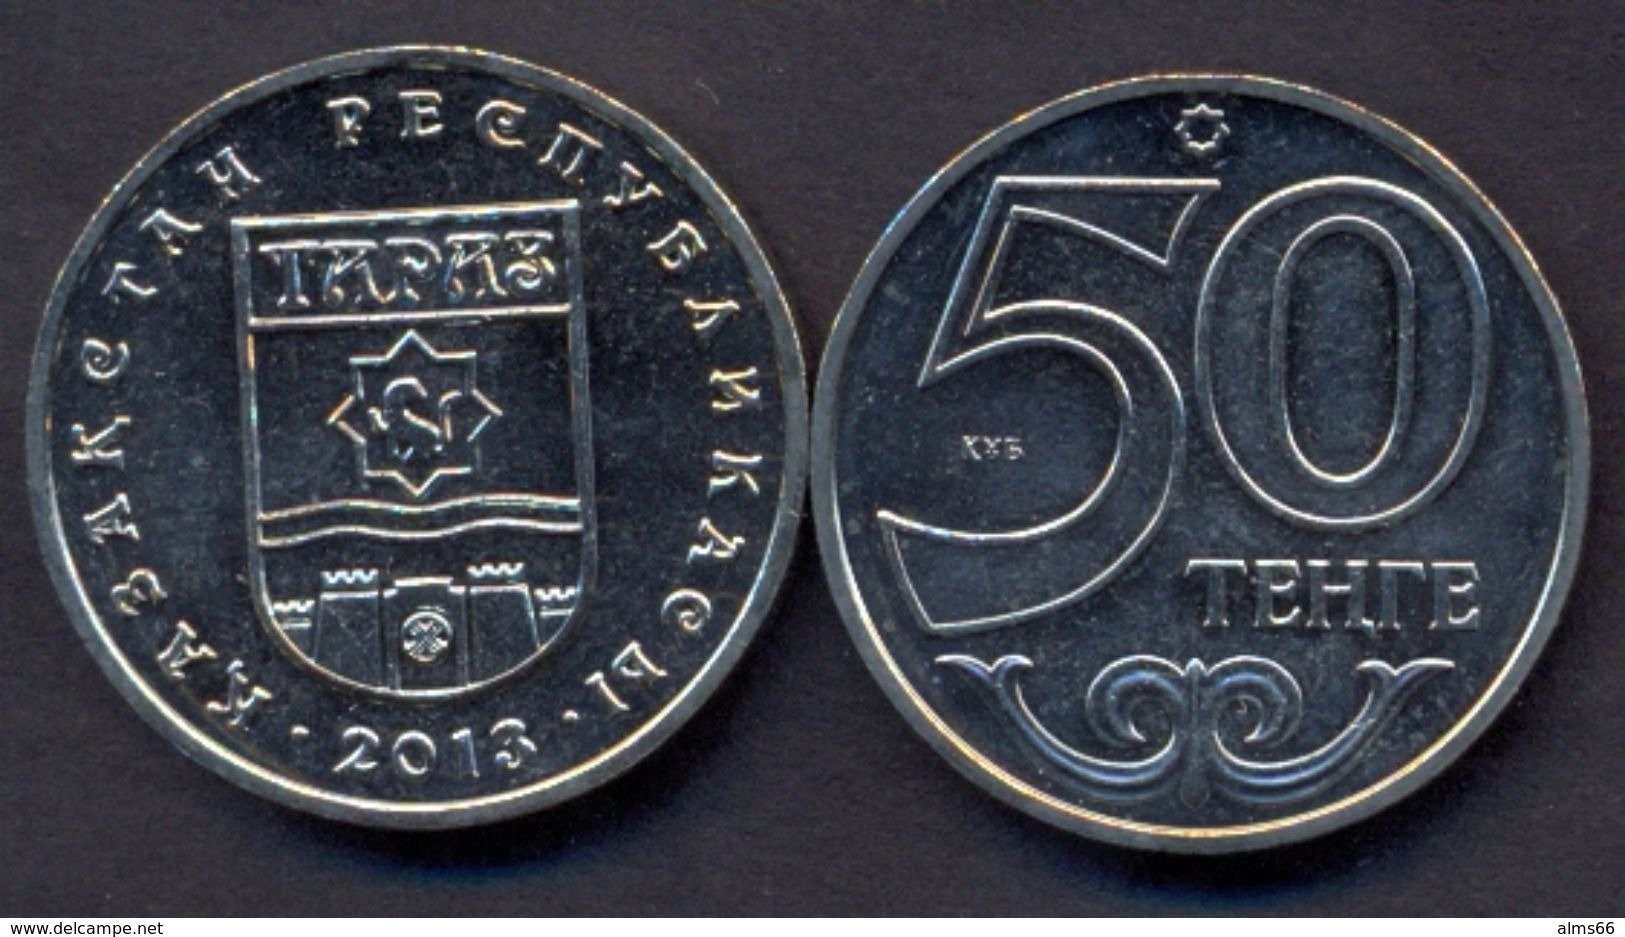 Kazakhstan 50 Tenge 2013 UNC < City TARAZ > Commemorative Coin - Kazakistan